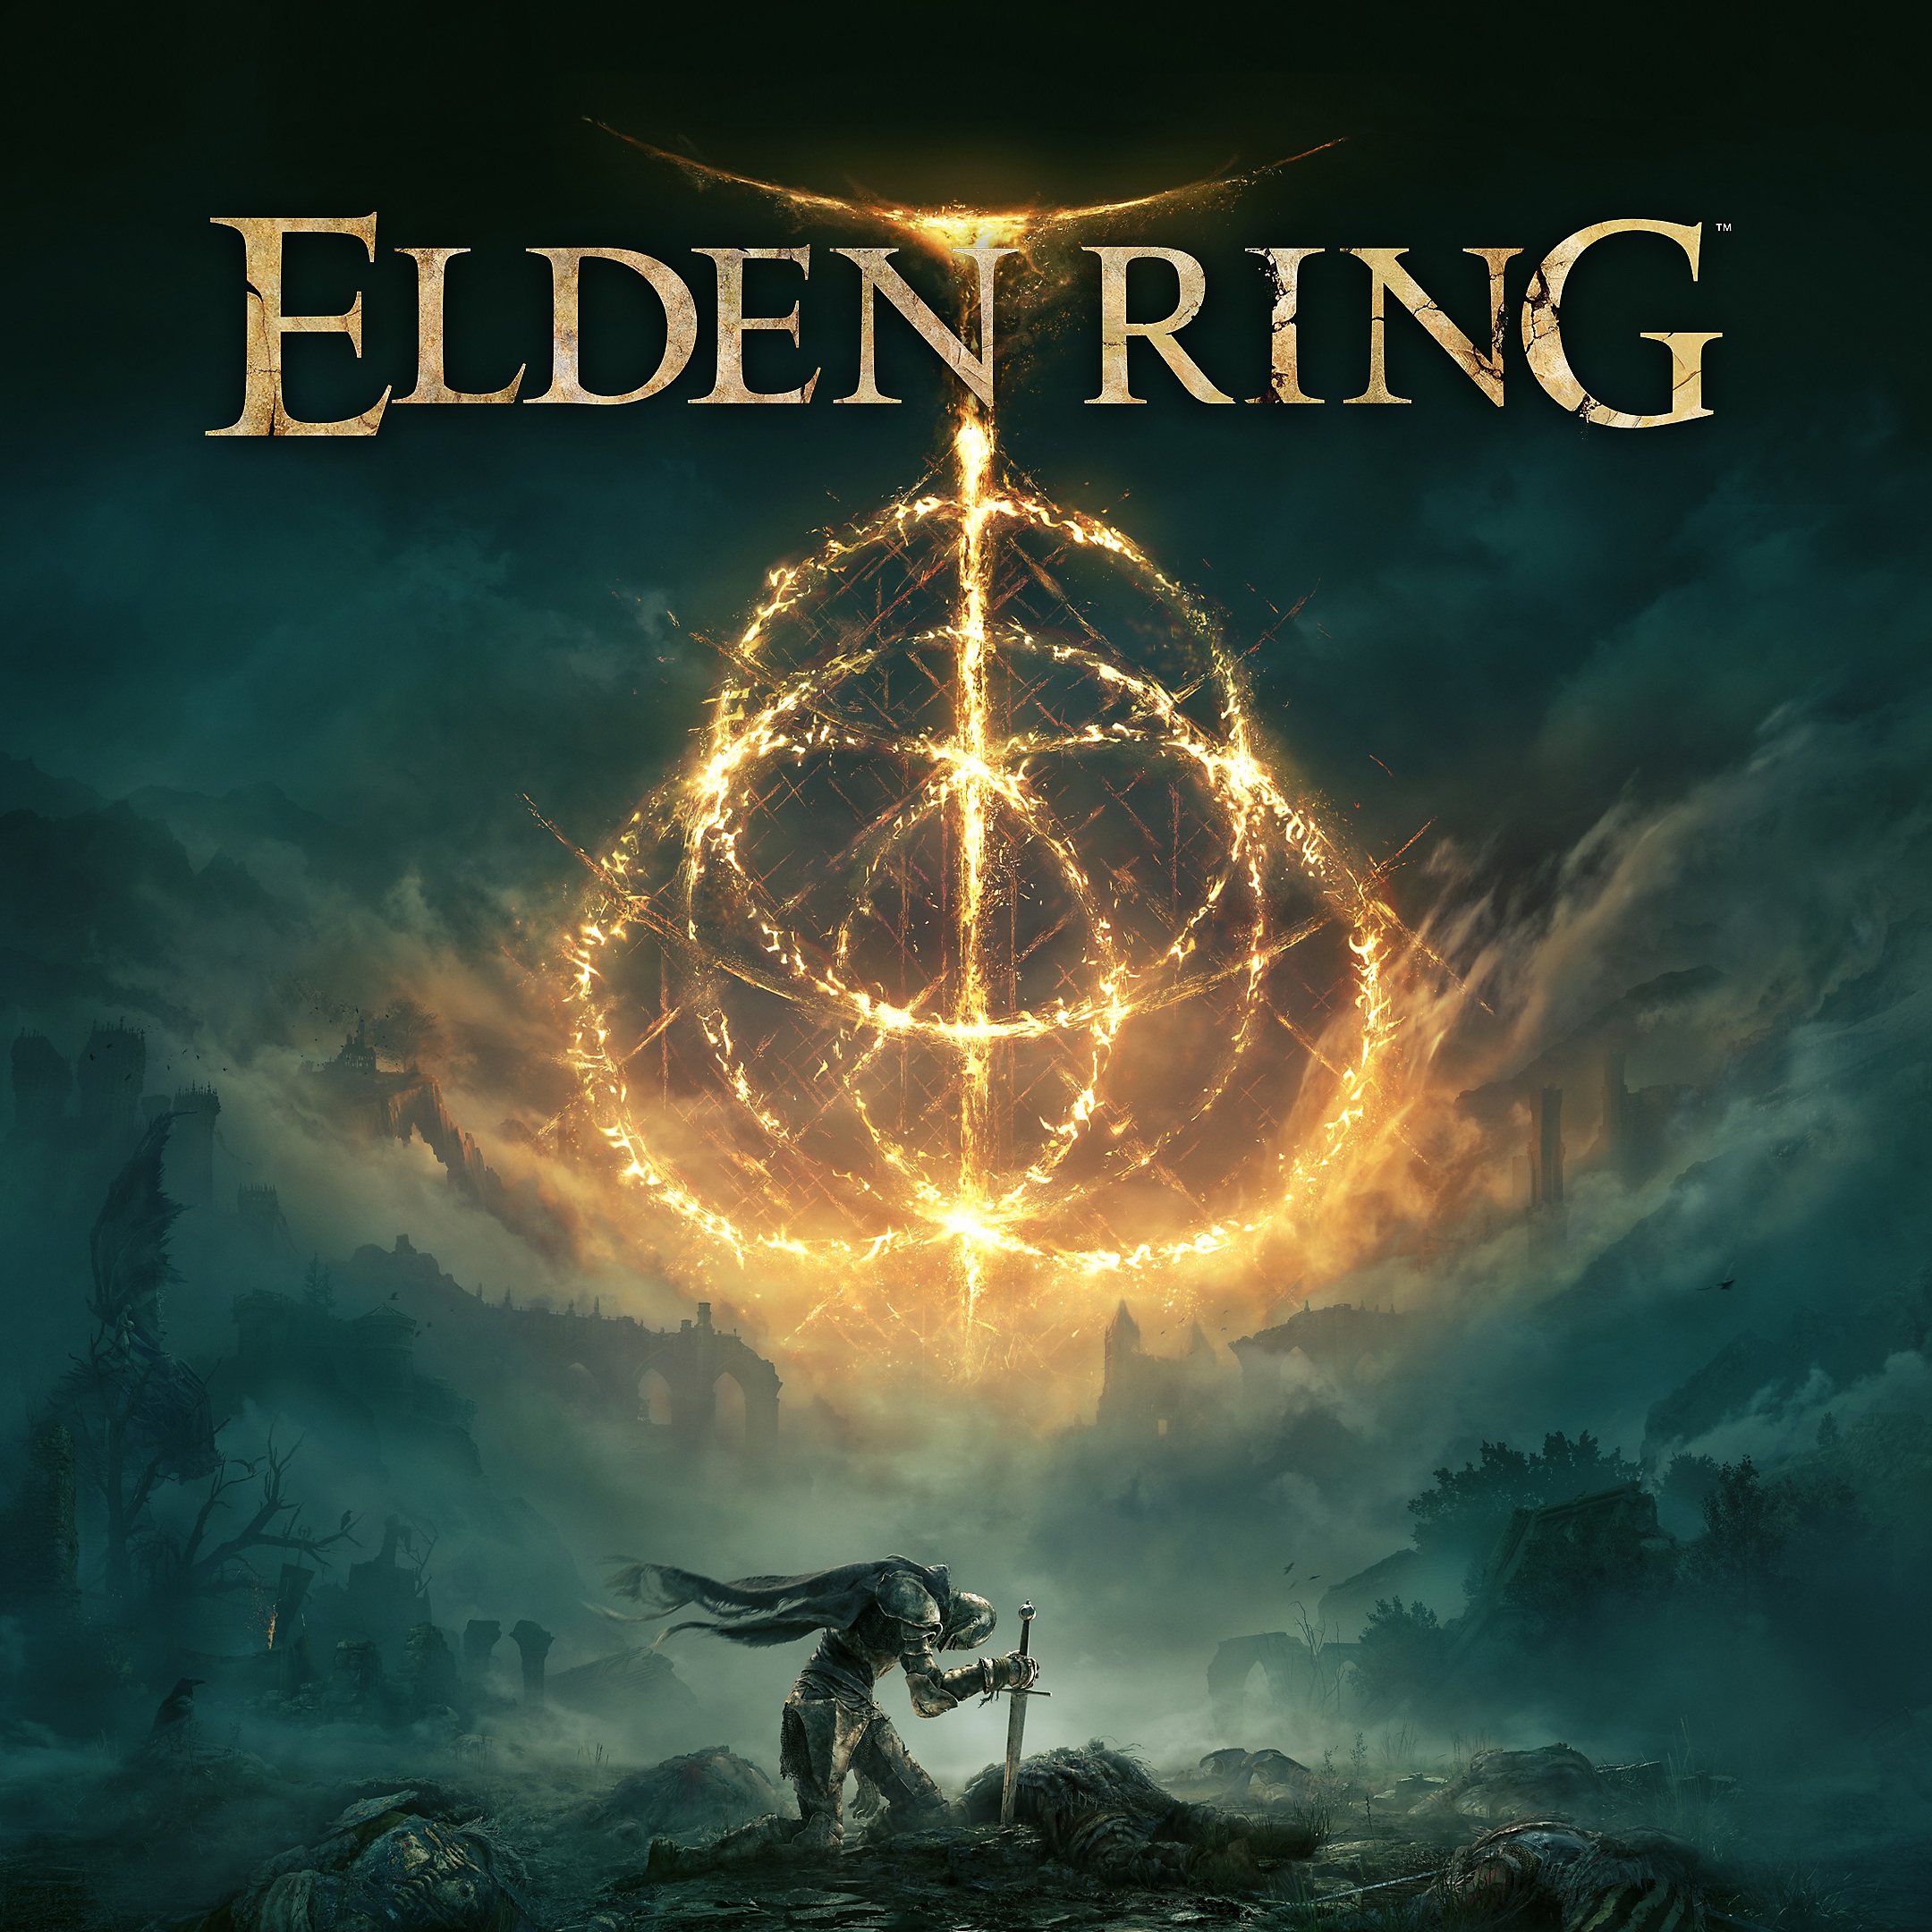 Elden Ring key art showing kneeling character